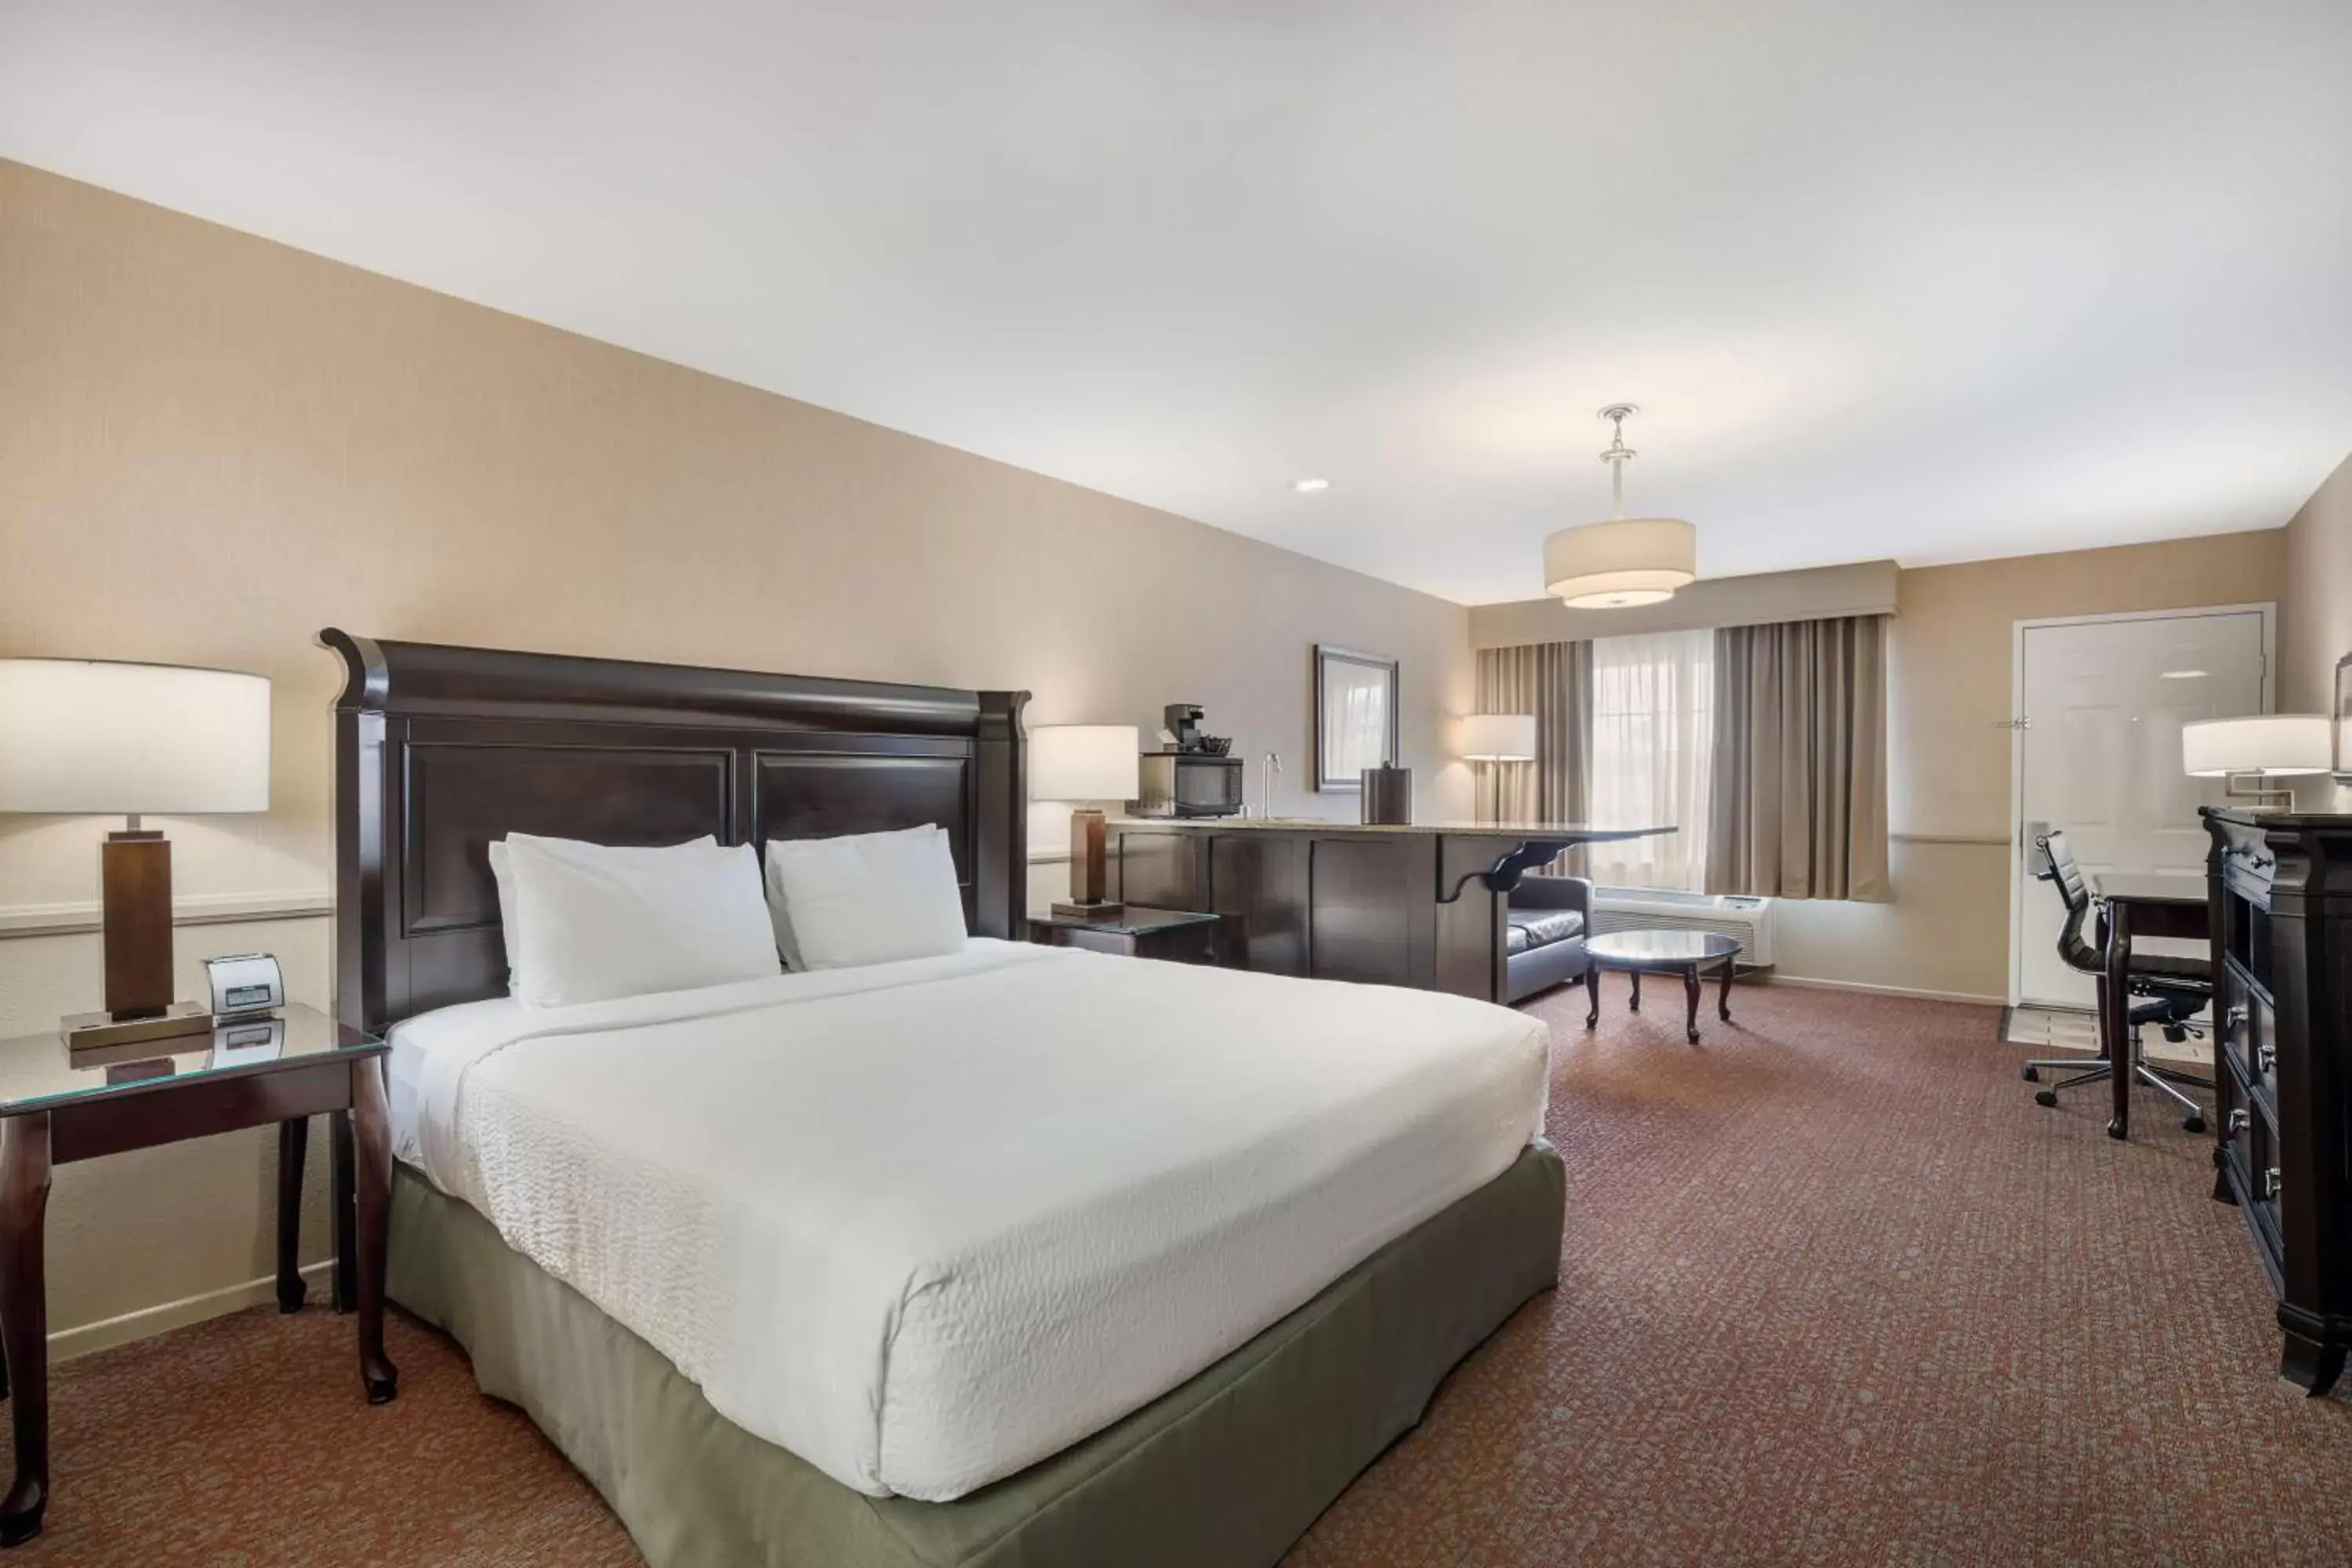 Bedroom, Bed in Best Western Corona Hotel & Suites